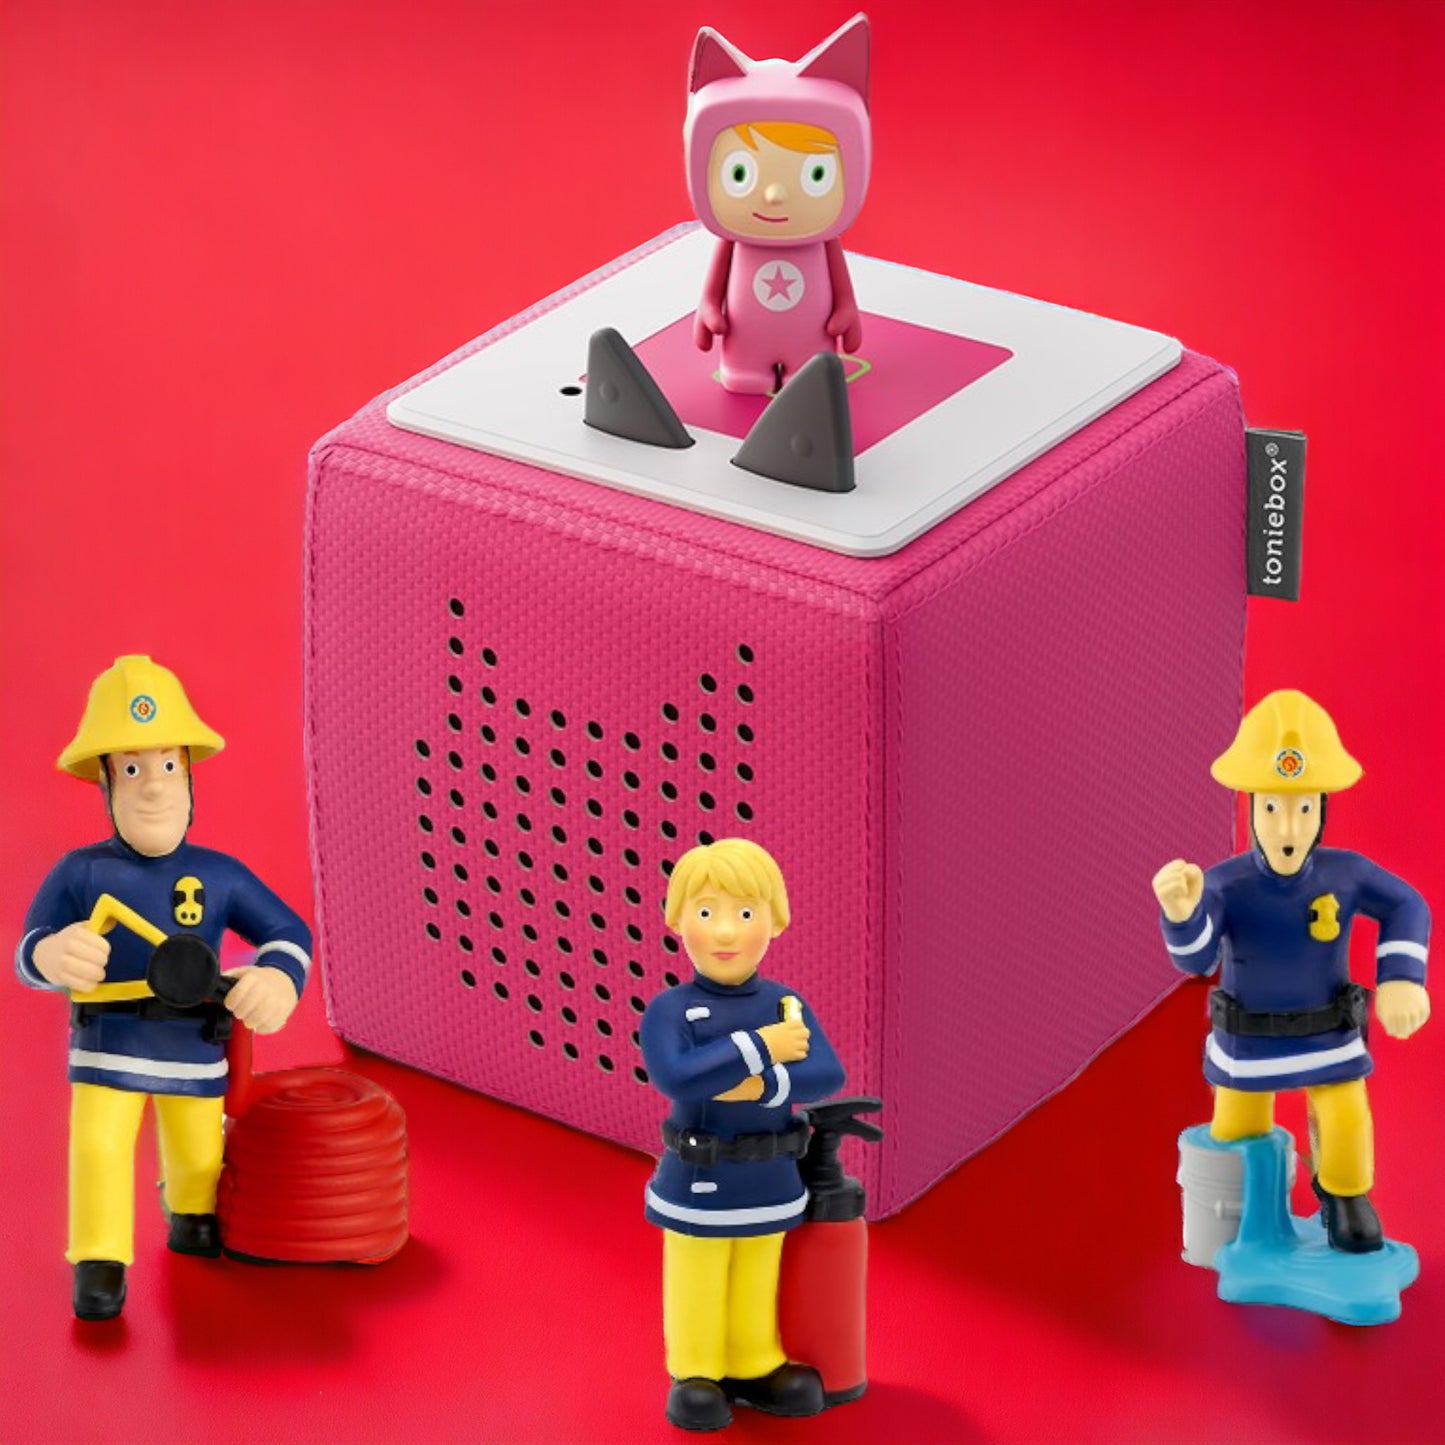 Toniebox | Extrapack | Starterset inclusive 3 FEUERWEHRMANN SAM Hörfiguren | Farbe der Box Pink